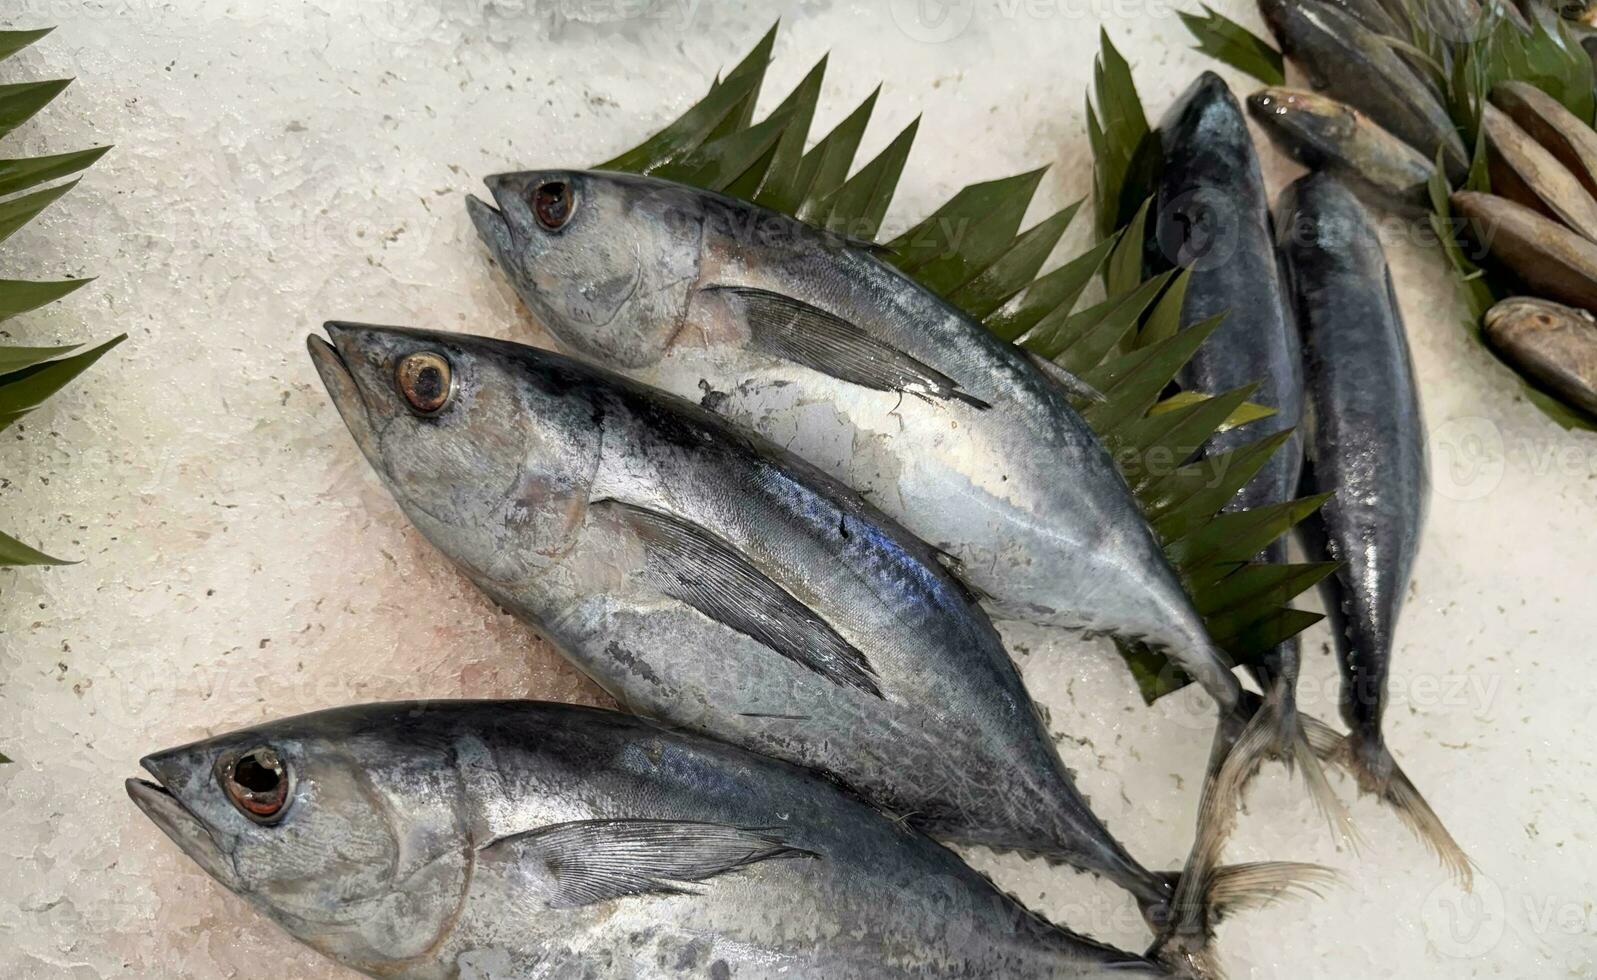 Tuna Mackerel fish fresh in the ice, local produce fish, japanese katsuo fish, or bonito tuna or cakalang or tongkol photo